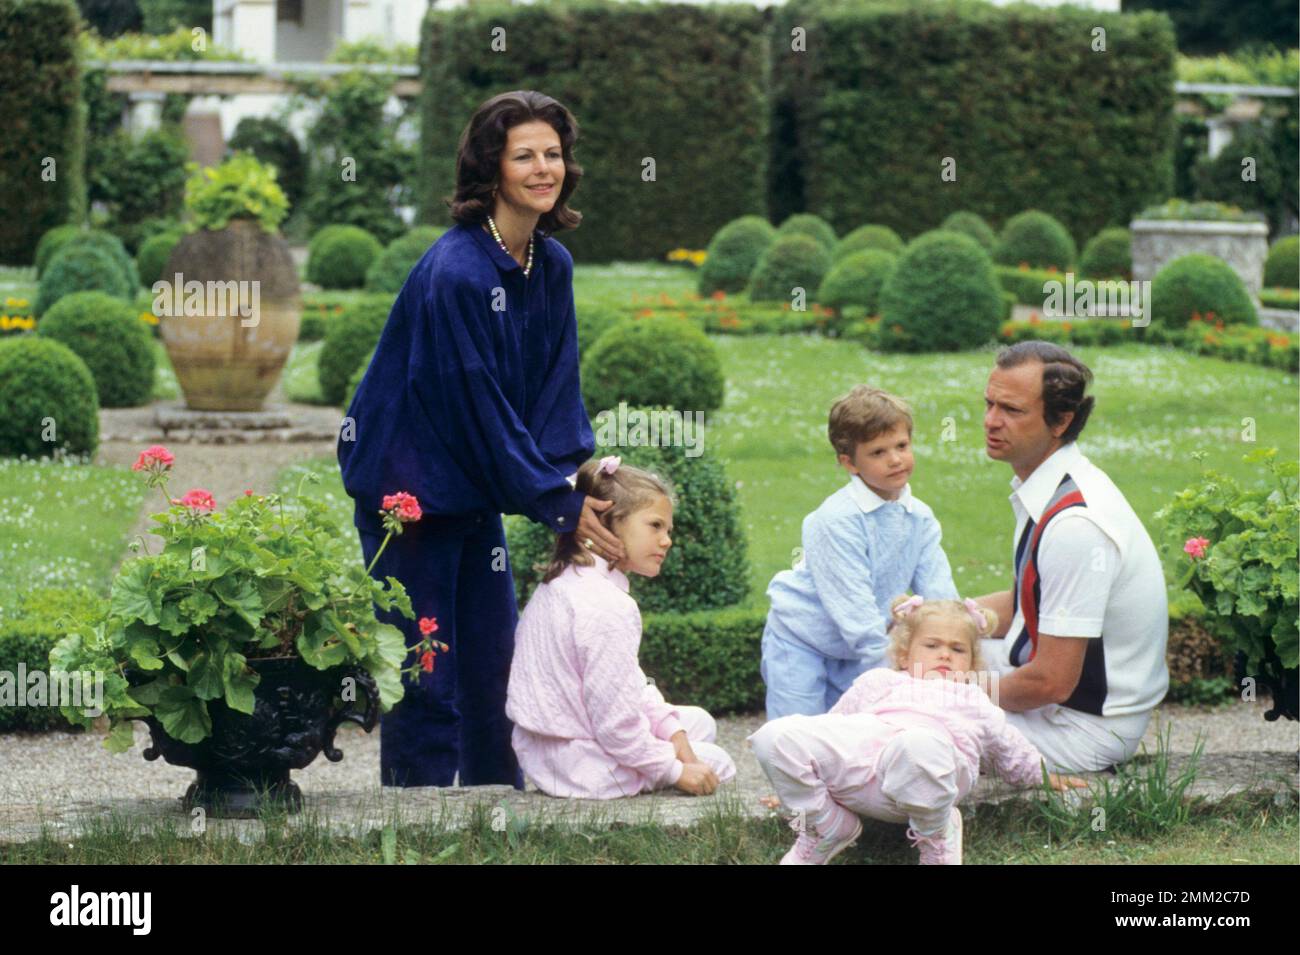 Carl XVI Gustaf, re di Svezia. Nato il 30 aprile 1946. Il re Carlo XVI Gustaf Regina Silvia i loro figli, principessa Madeleine, principessa corona Victoria, principe Carl Philip, nella foto al di fuori del castello di Solliden Öland nell'estate del 1985. Foto Stock